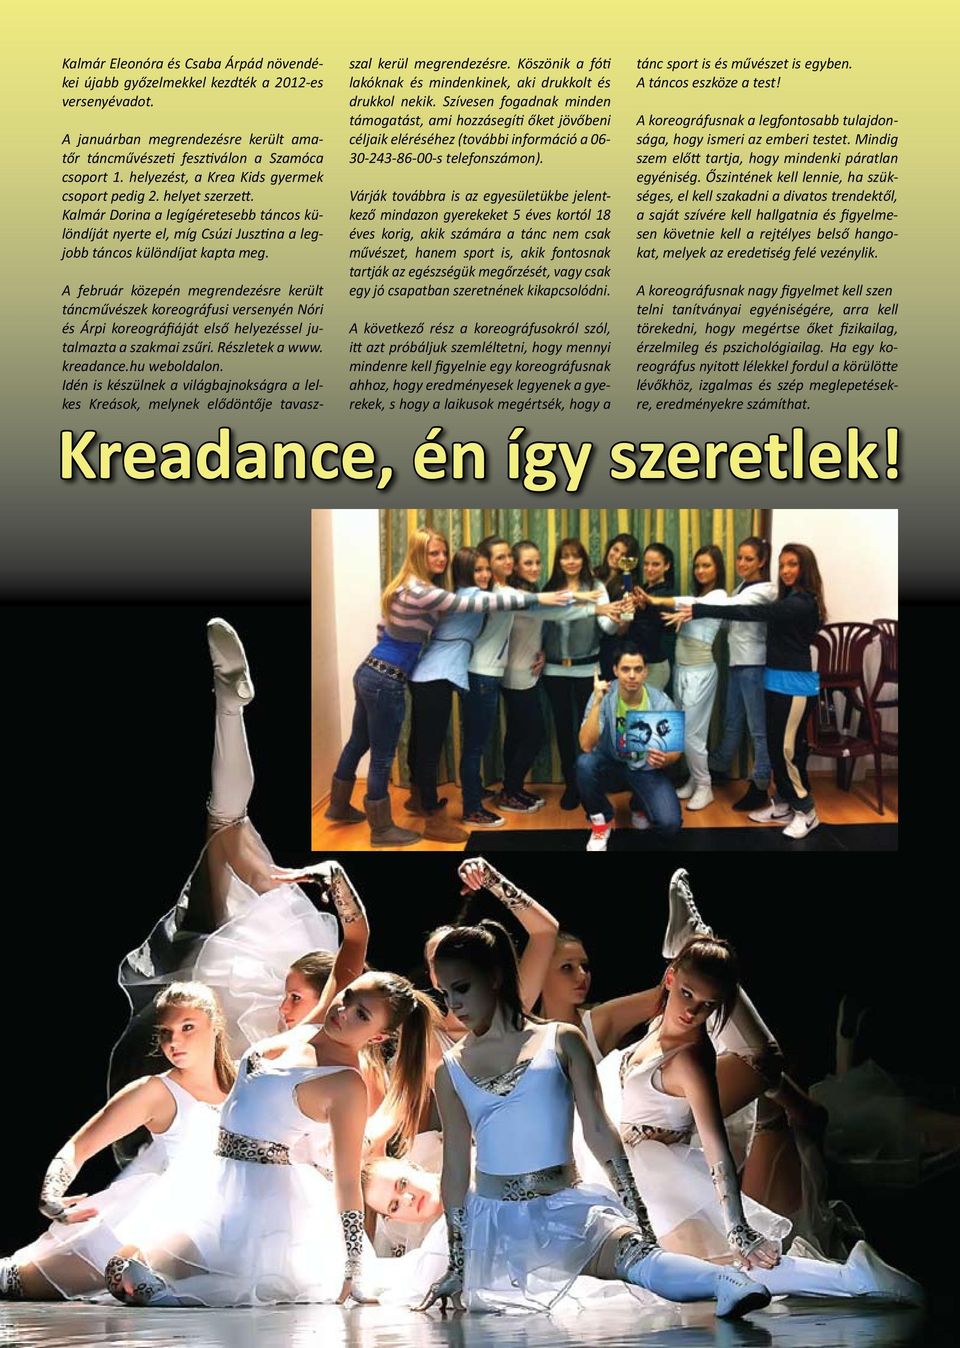 A február közepén megrendezésre került táncművészek koreográfusi versenyén Nóri és Árpi koreográfiáját első helyezéssel jutalmazta a szakmai zsűri. Részletek a www. kreadance.hu weboldalon.